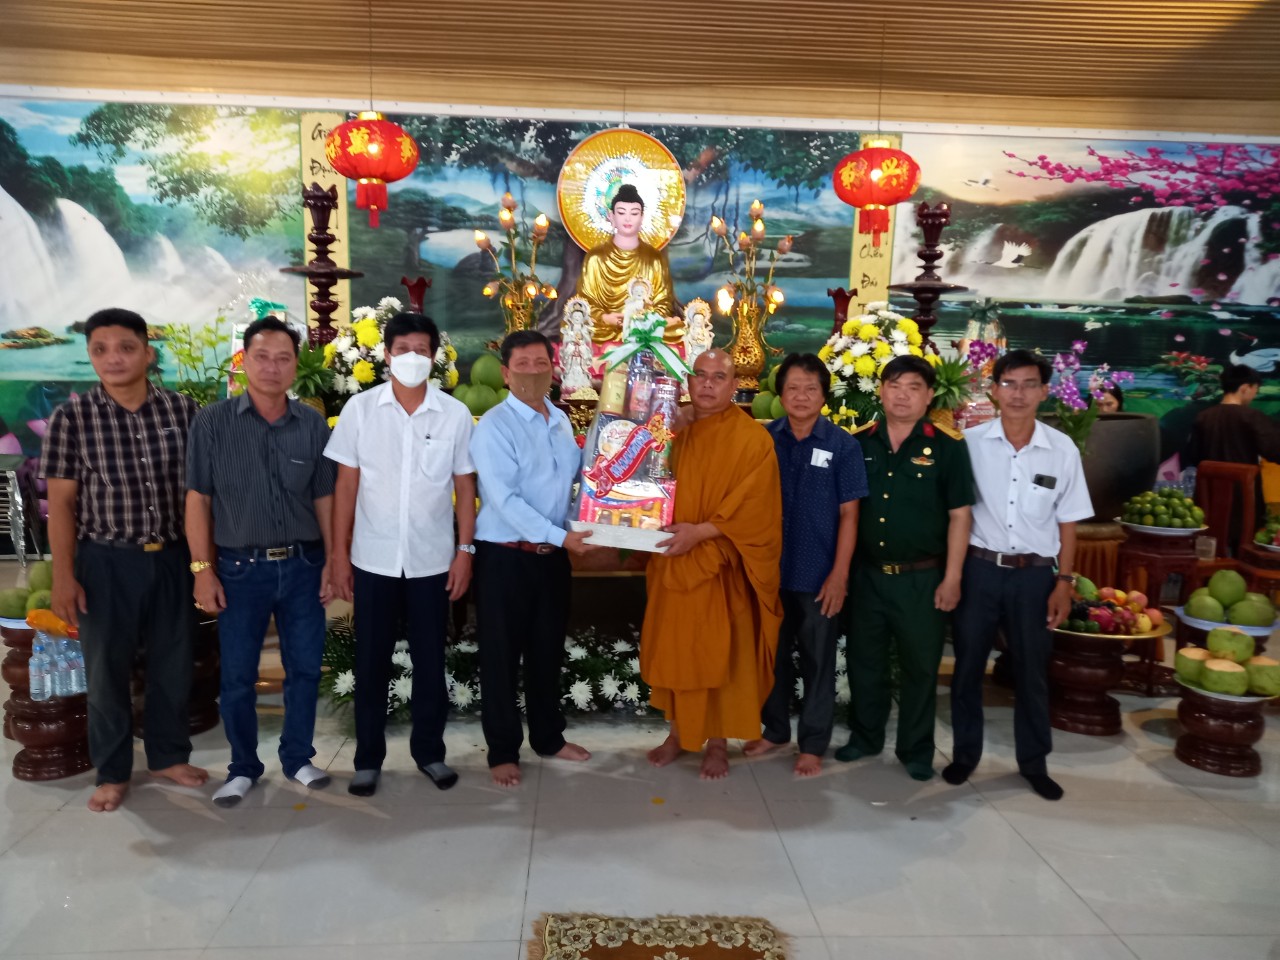 Lãnh đạo huyện Tân Biên thăm chúc mừng các cơ sở Phật giáo nhân dịp lễ Phật Đản năm 2022, Phật lịch 2566